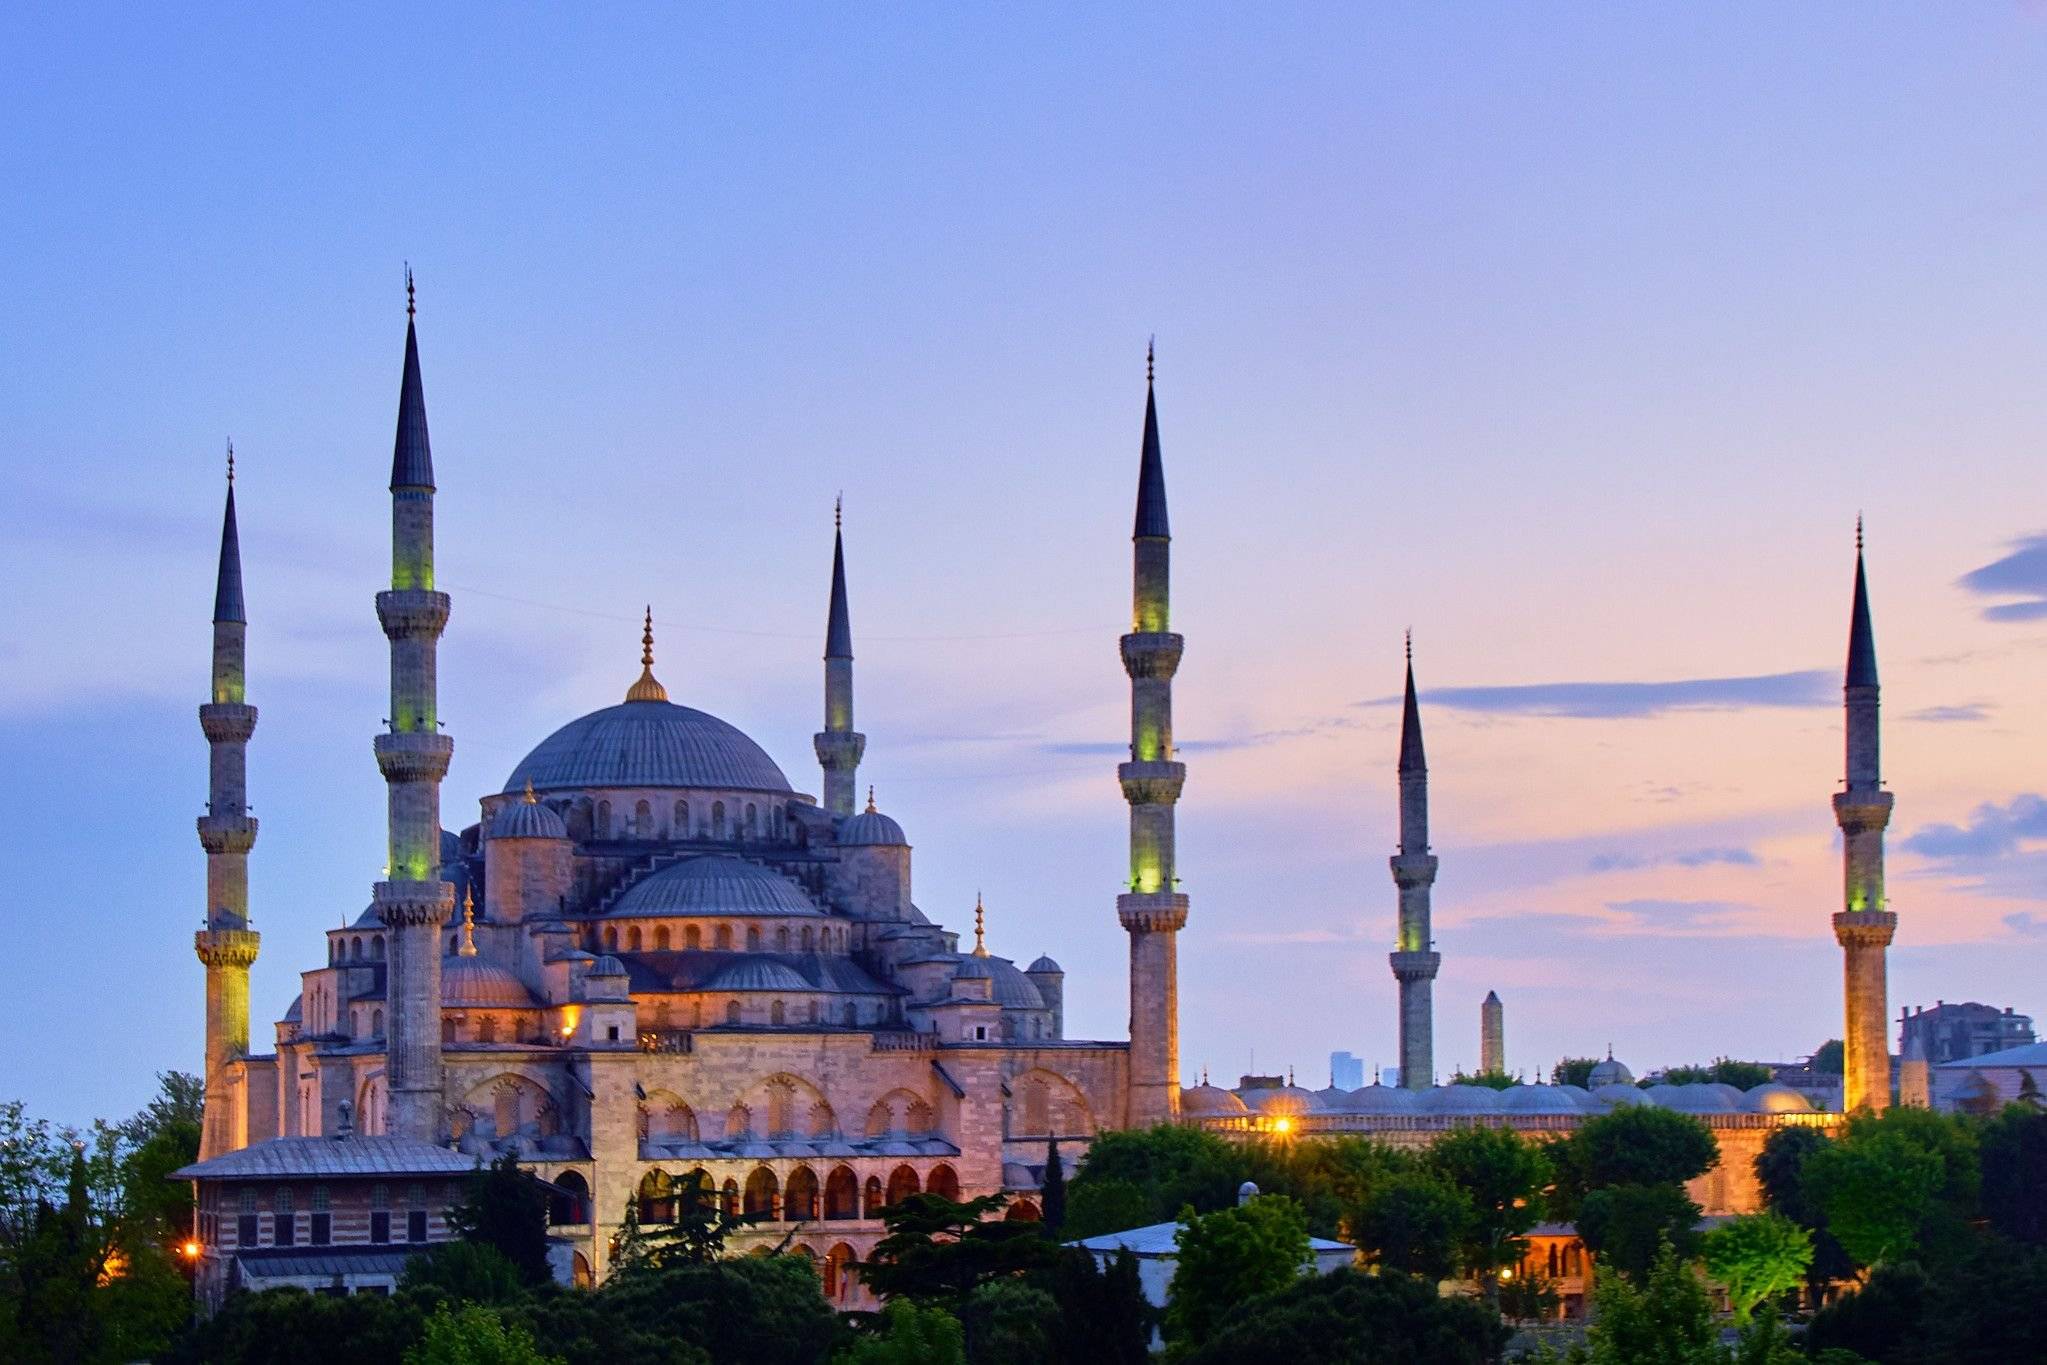 Merveilles byzantines et ottomanes d'Istanbul